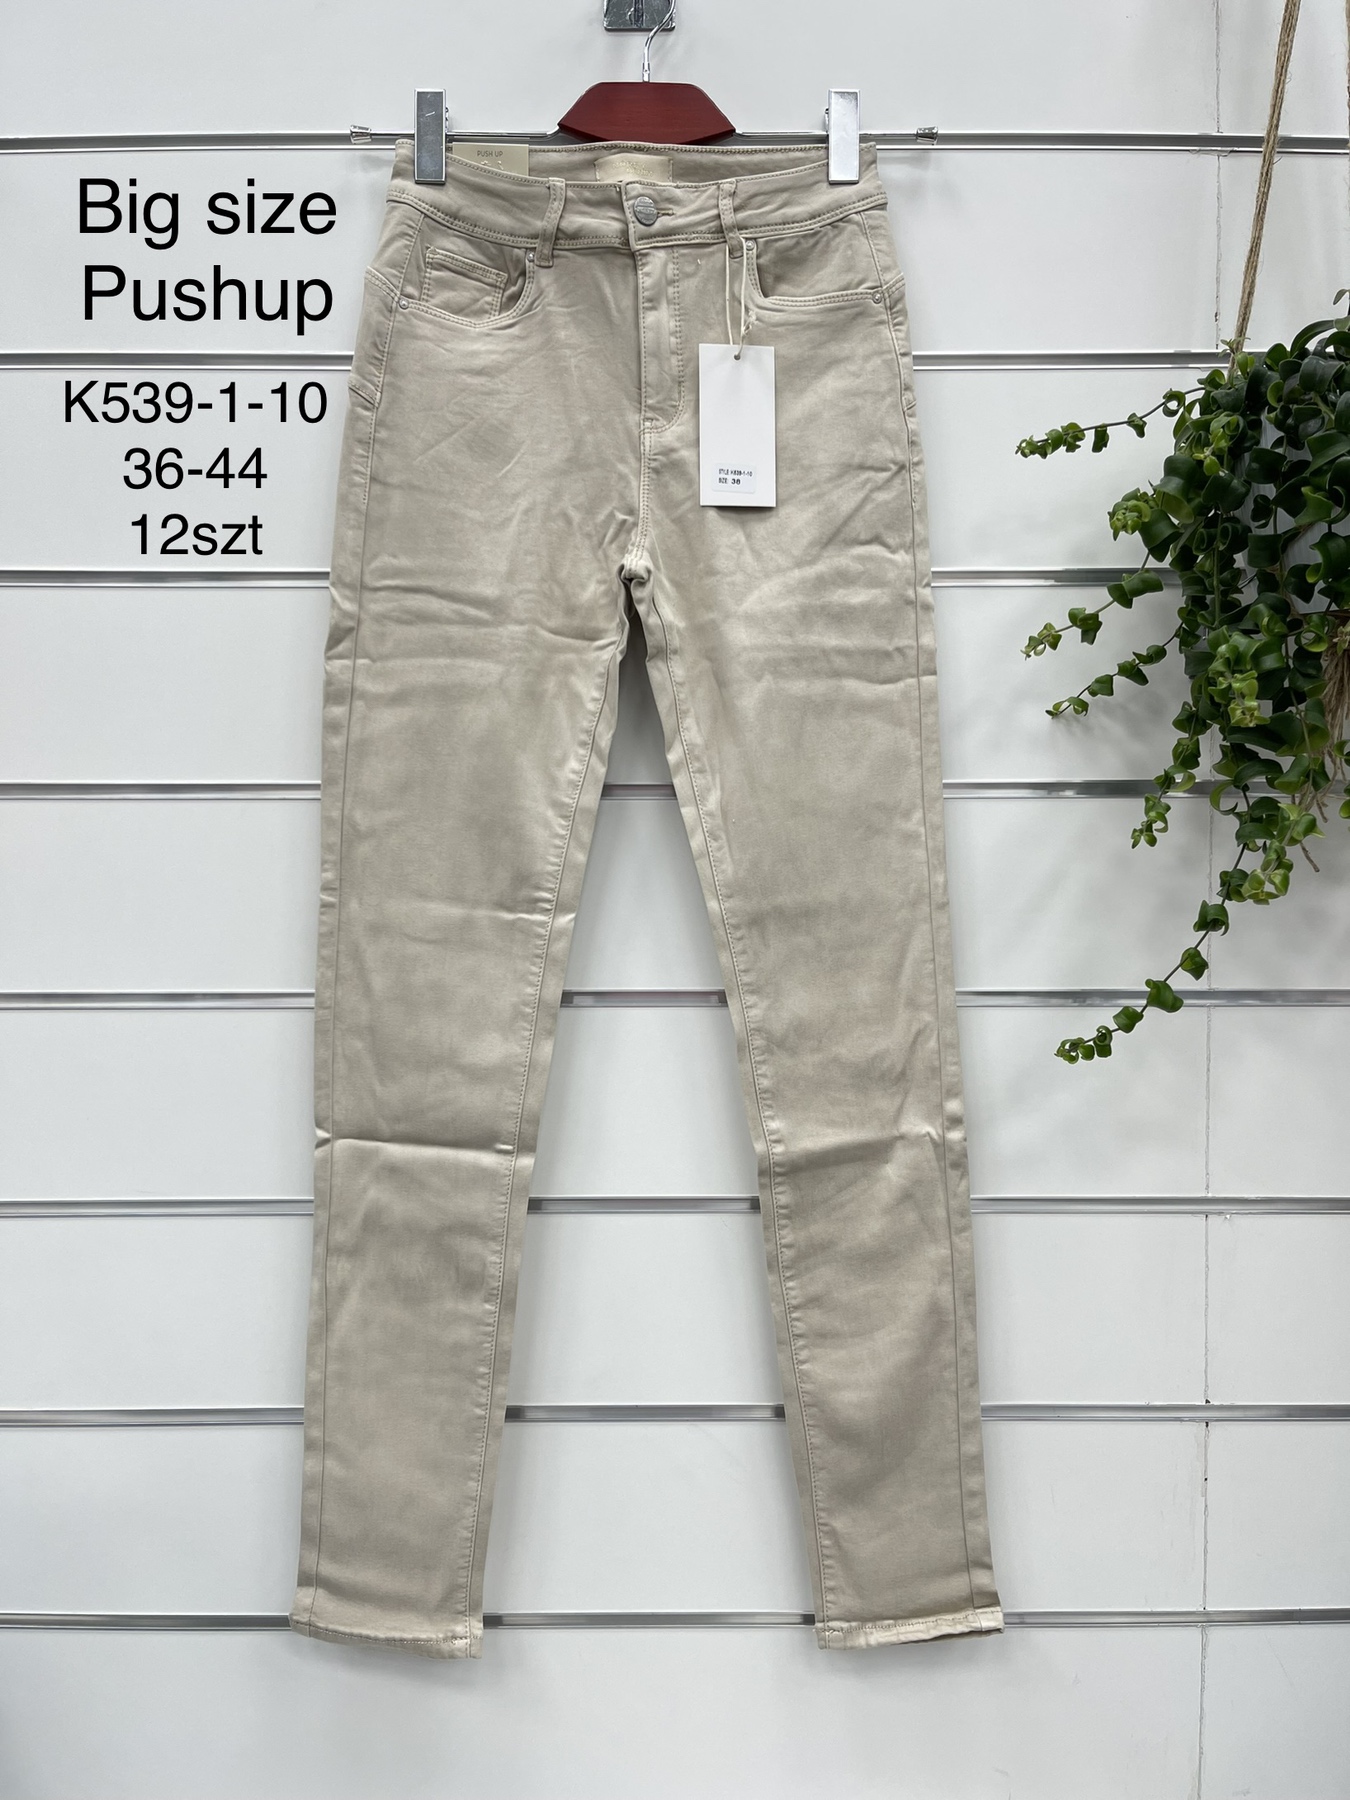 Spodnie  damskie jeans Roz 36-44.  1 kolor . Paczka 12szt